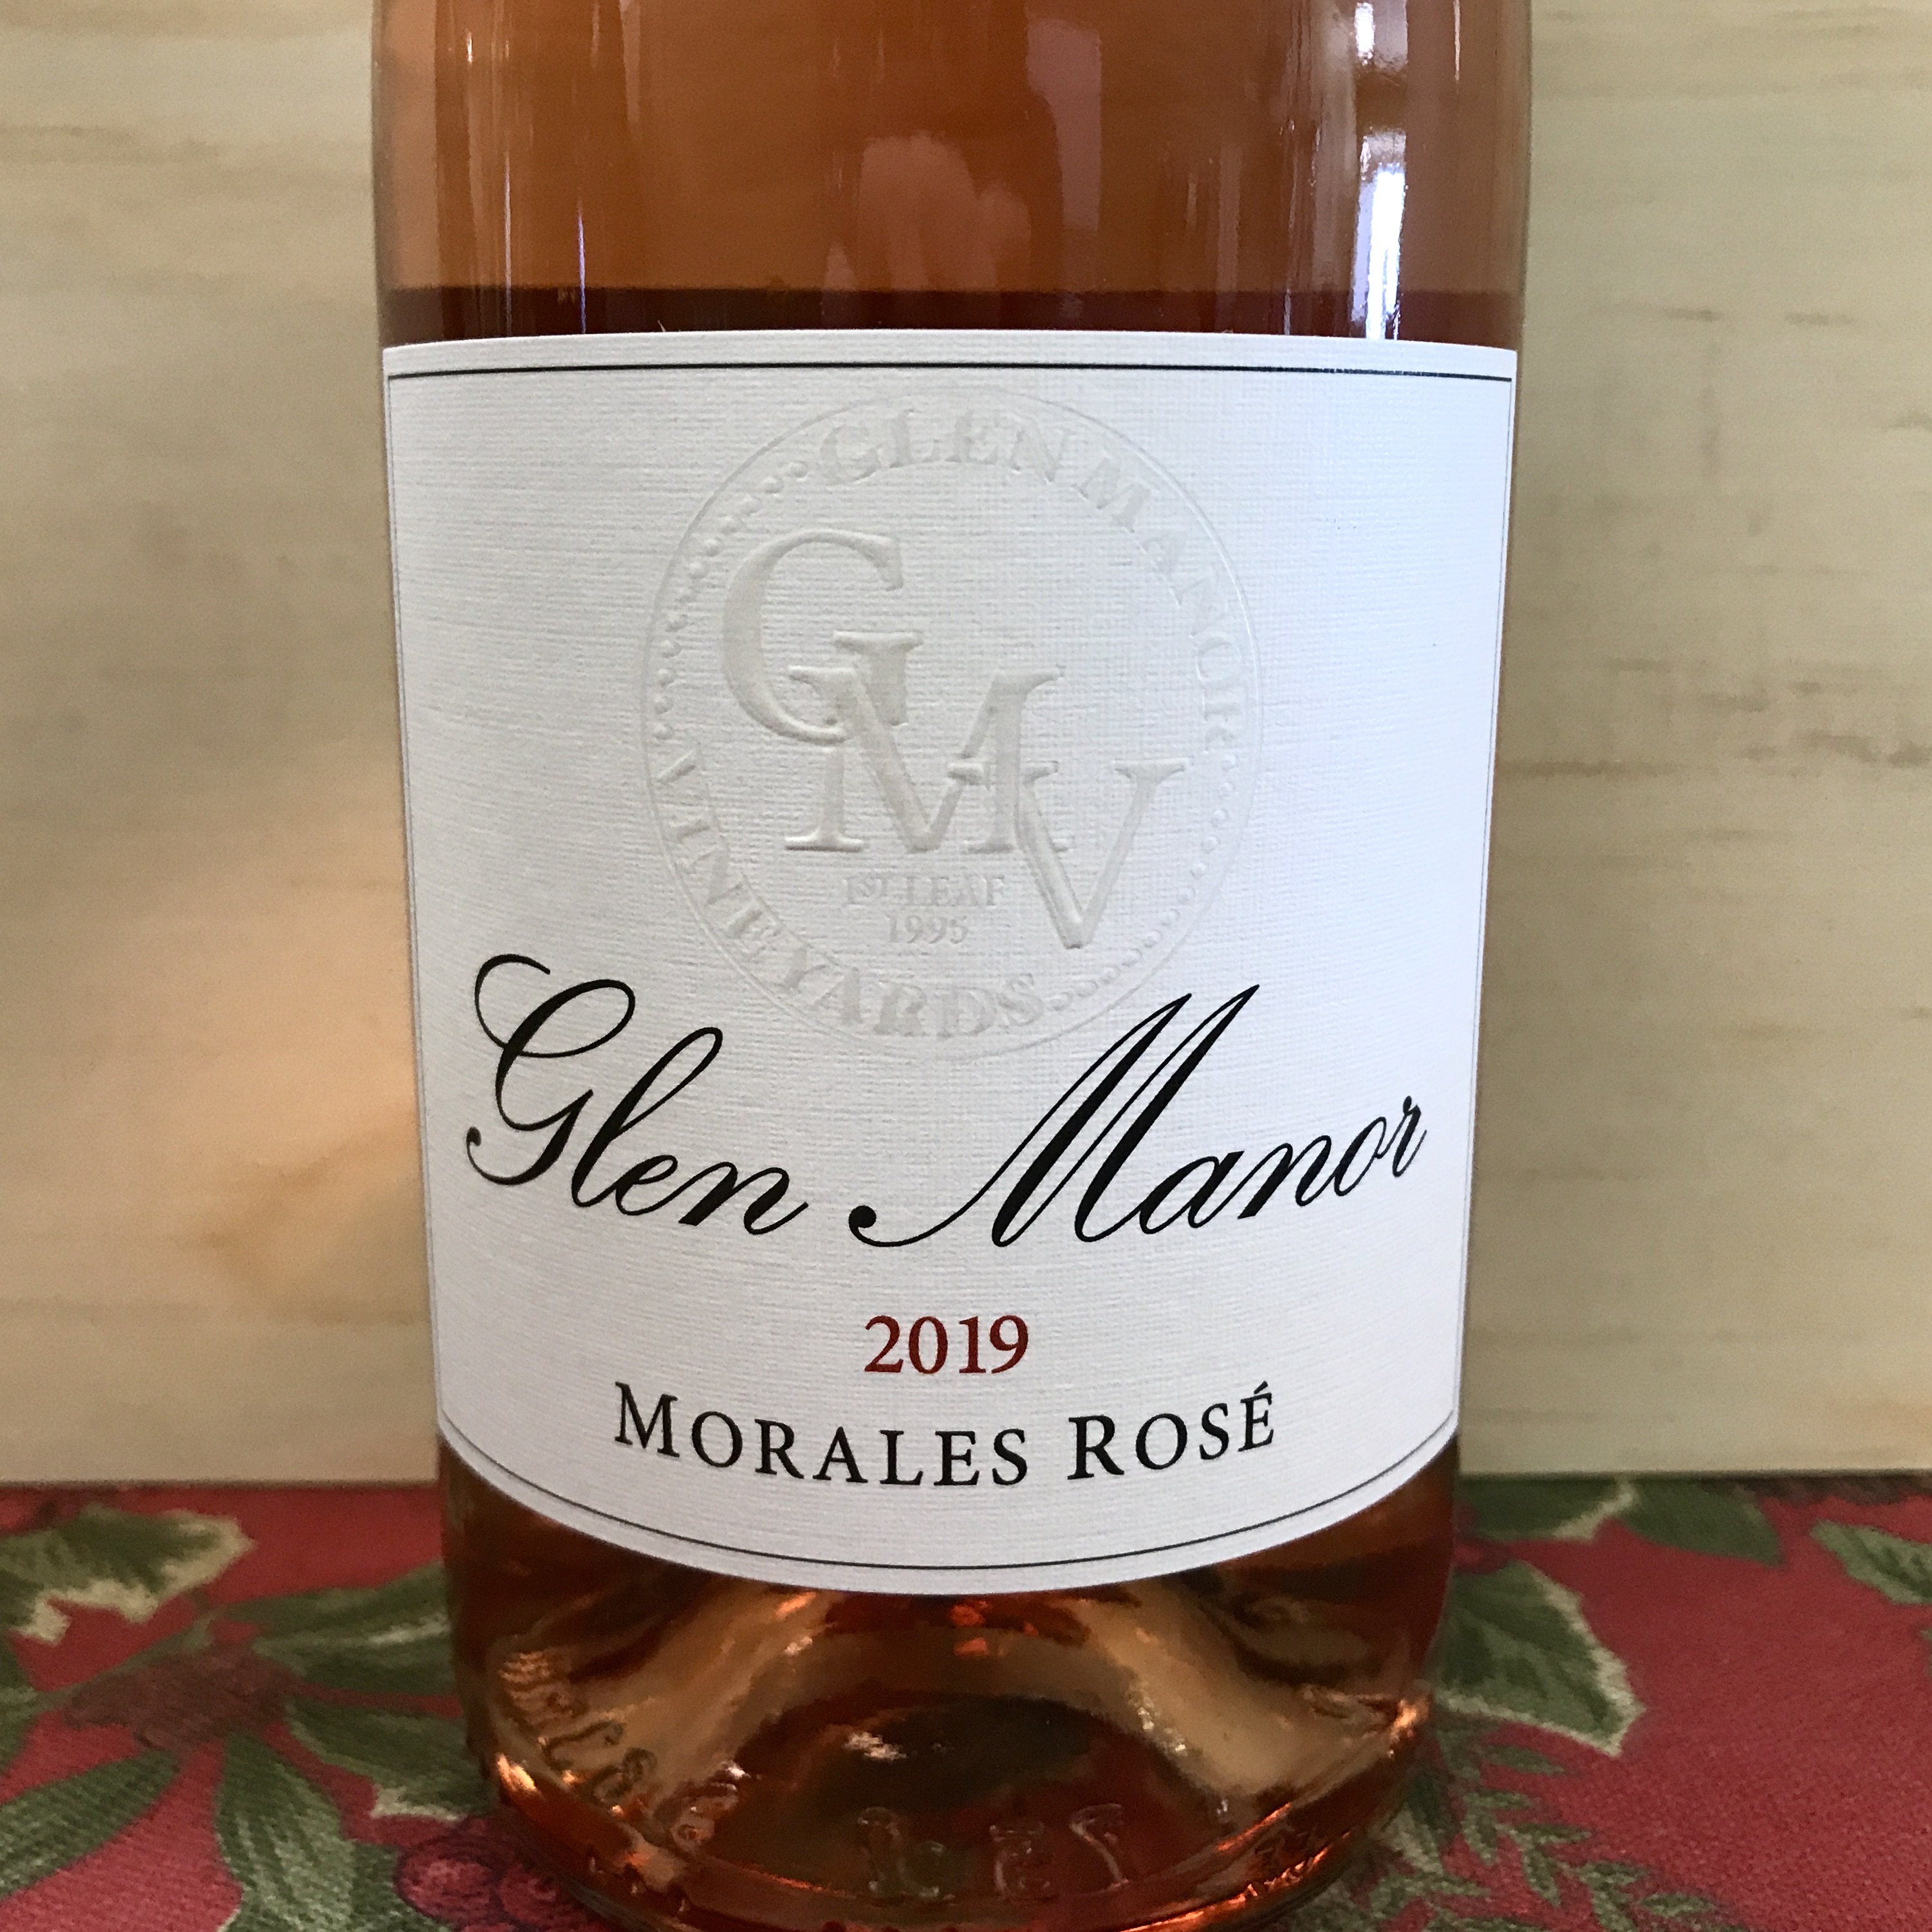 Glen Manor Morales Rosé 2019